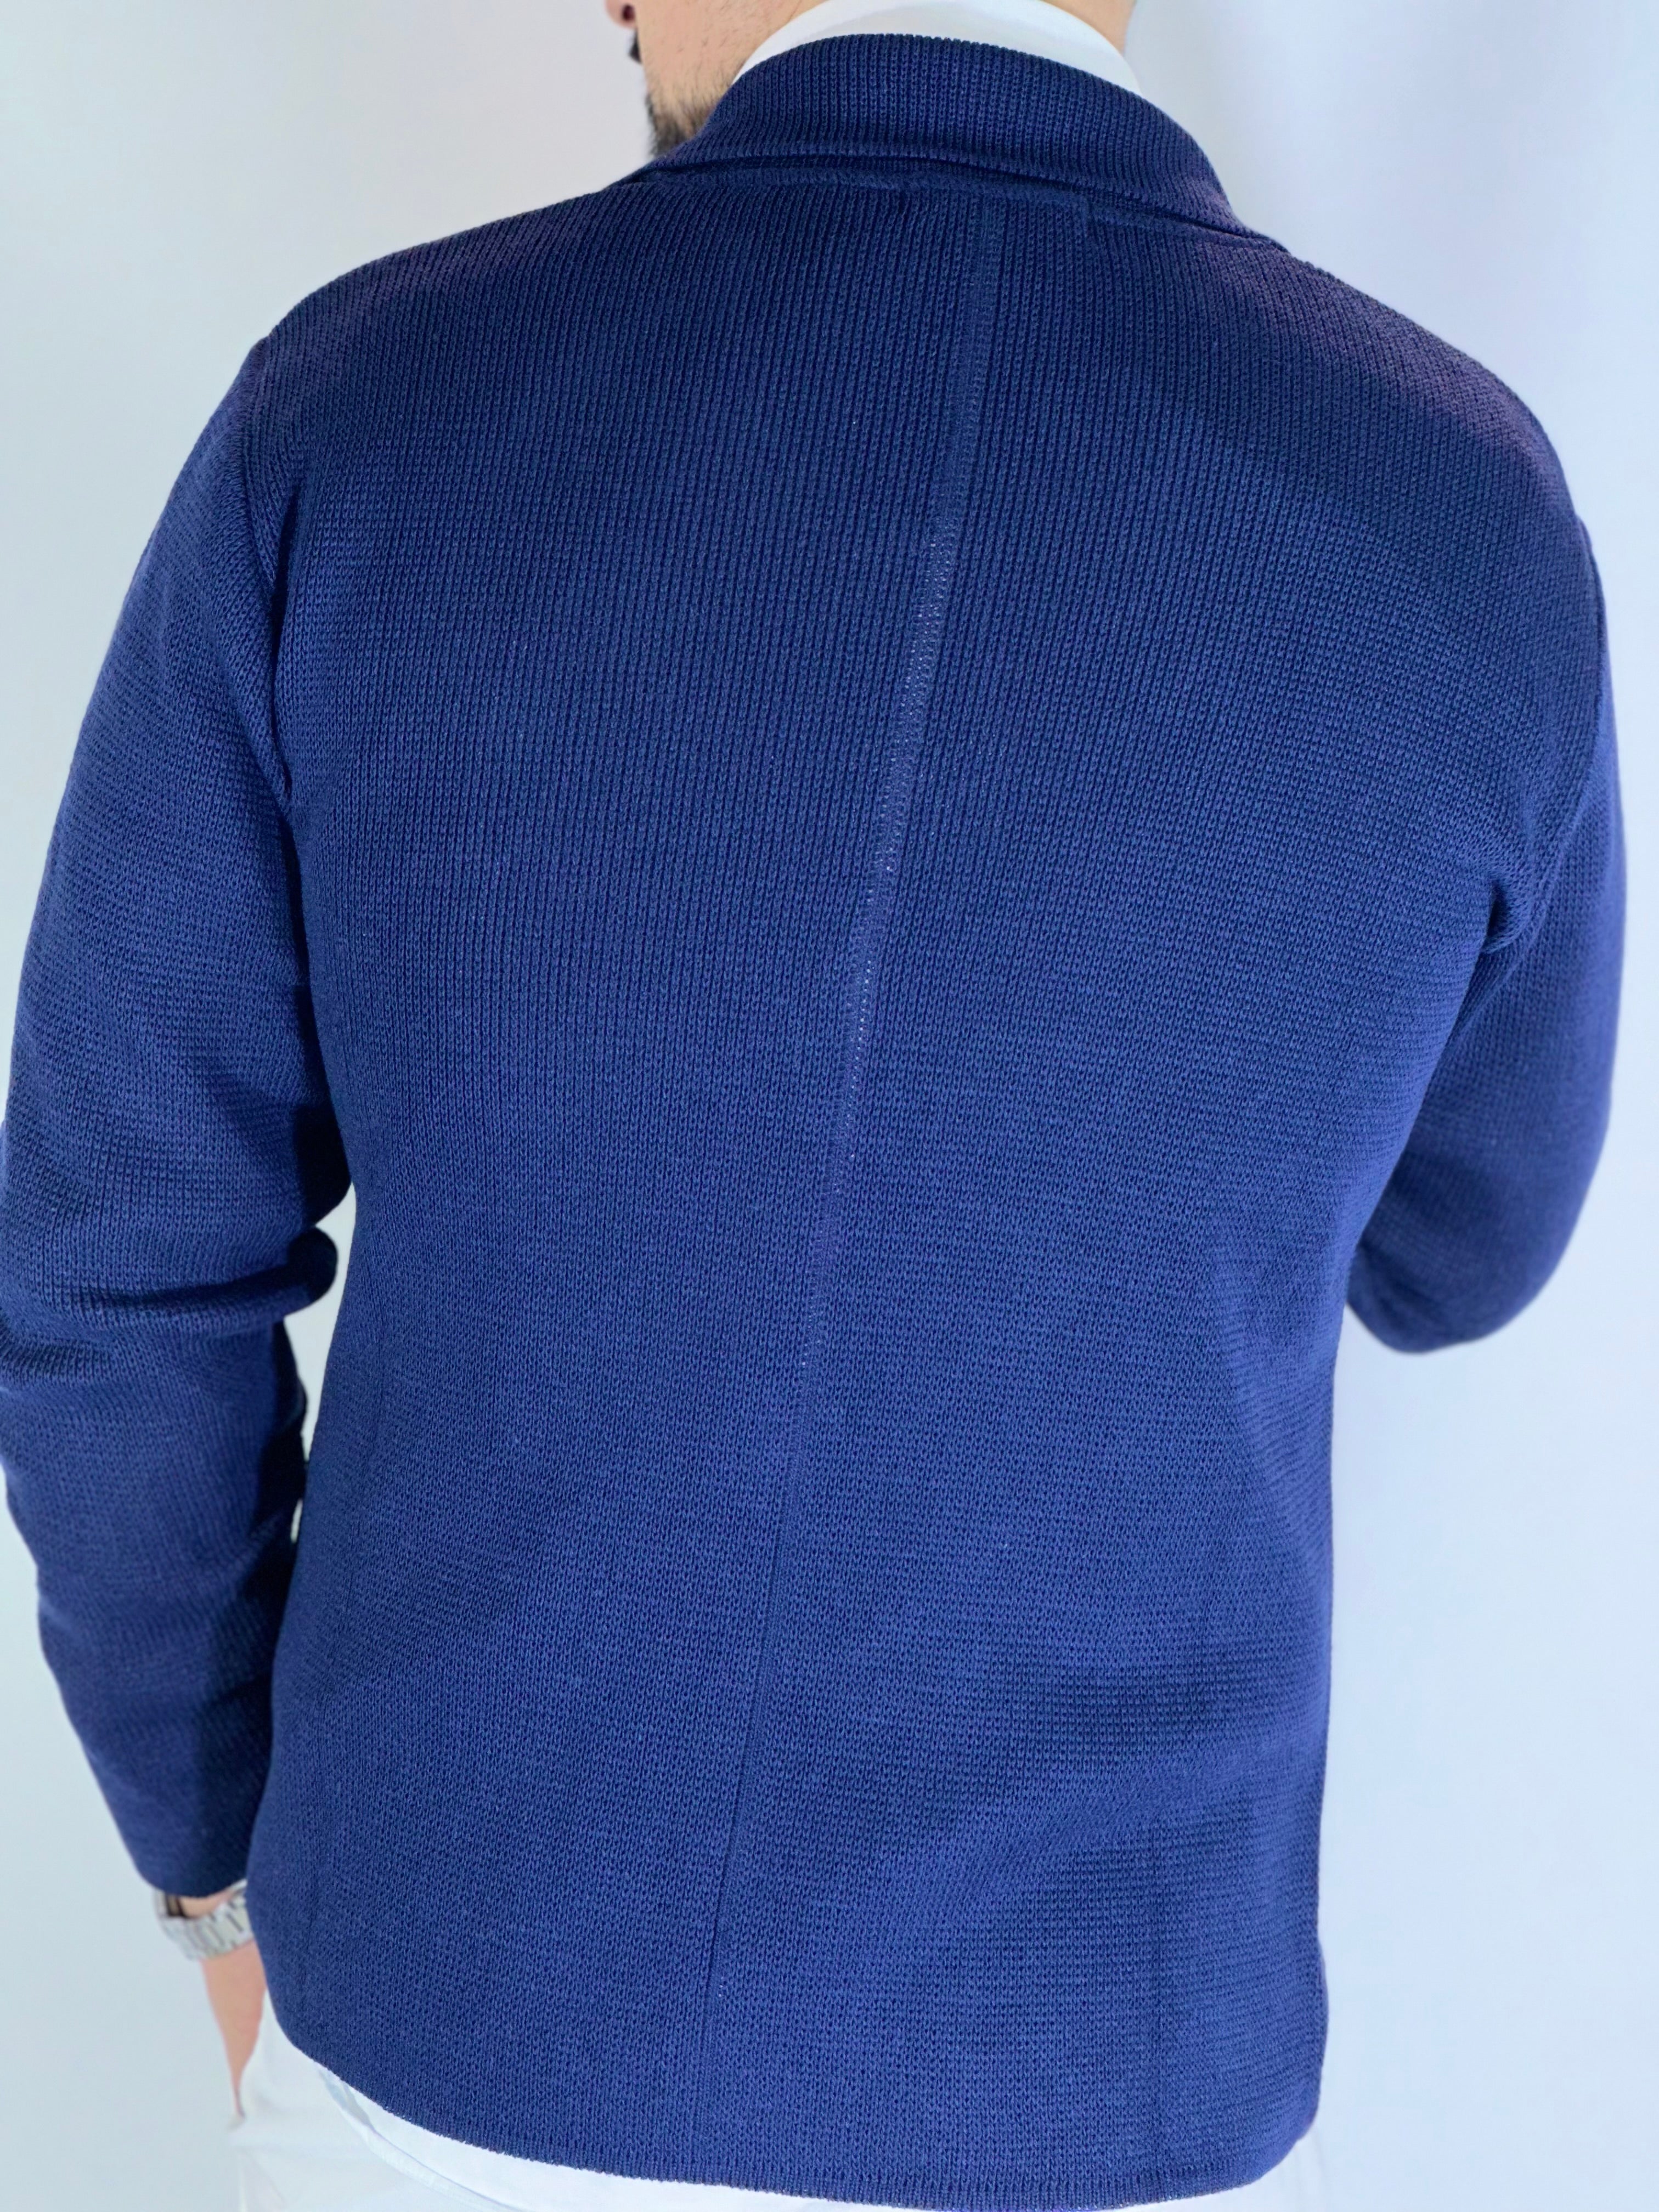 Cardigan giacca bluette AK8577302